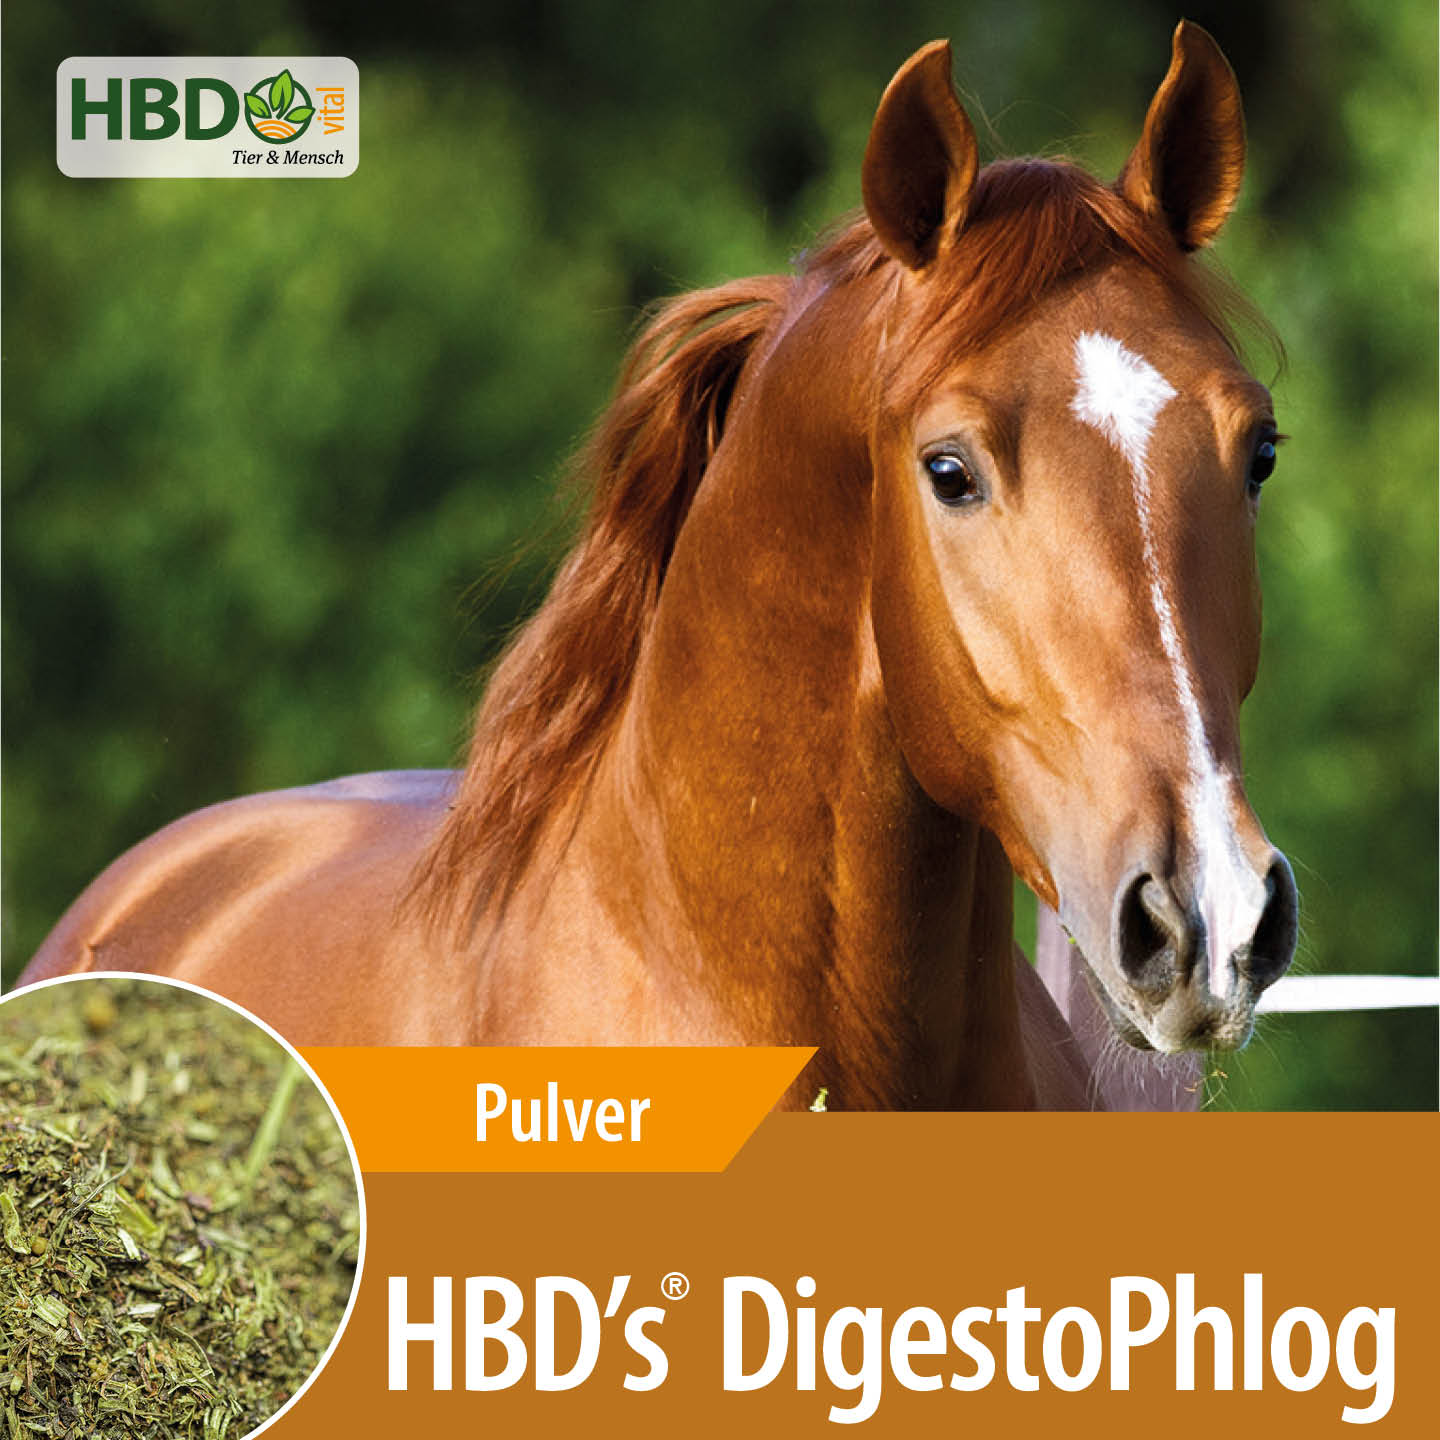 Shopbild für HBD's DigestoPhlog - Das Bild zeigt den Produktnamen  sowie den Hinweis, dass es sich um ein Pulver handelt. Ein hellbraunes Pferd ist zu sehen, was das Produkt visuell ansprechend präsentiert und seine Verwendung für Pferde